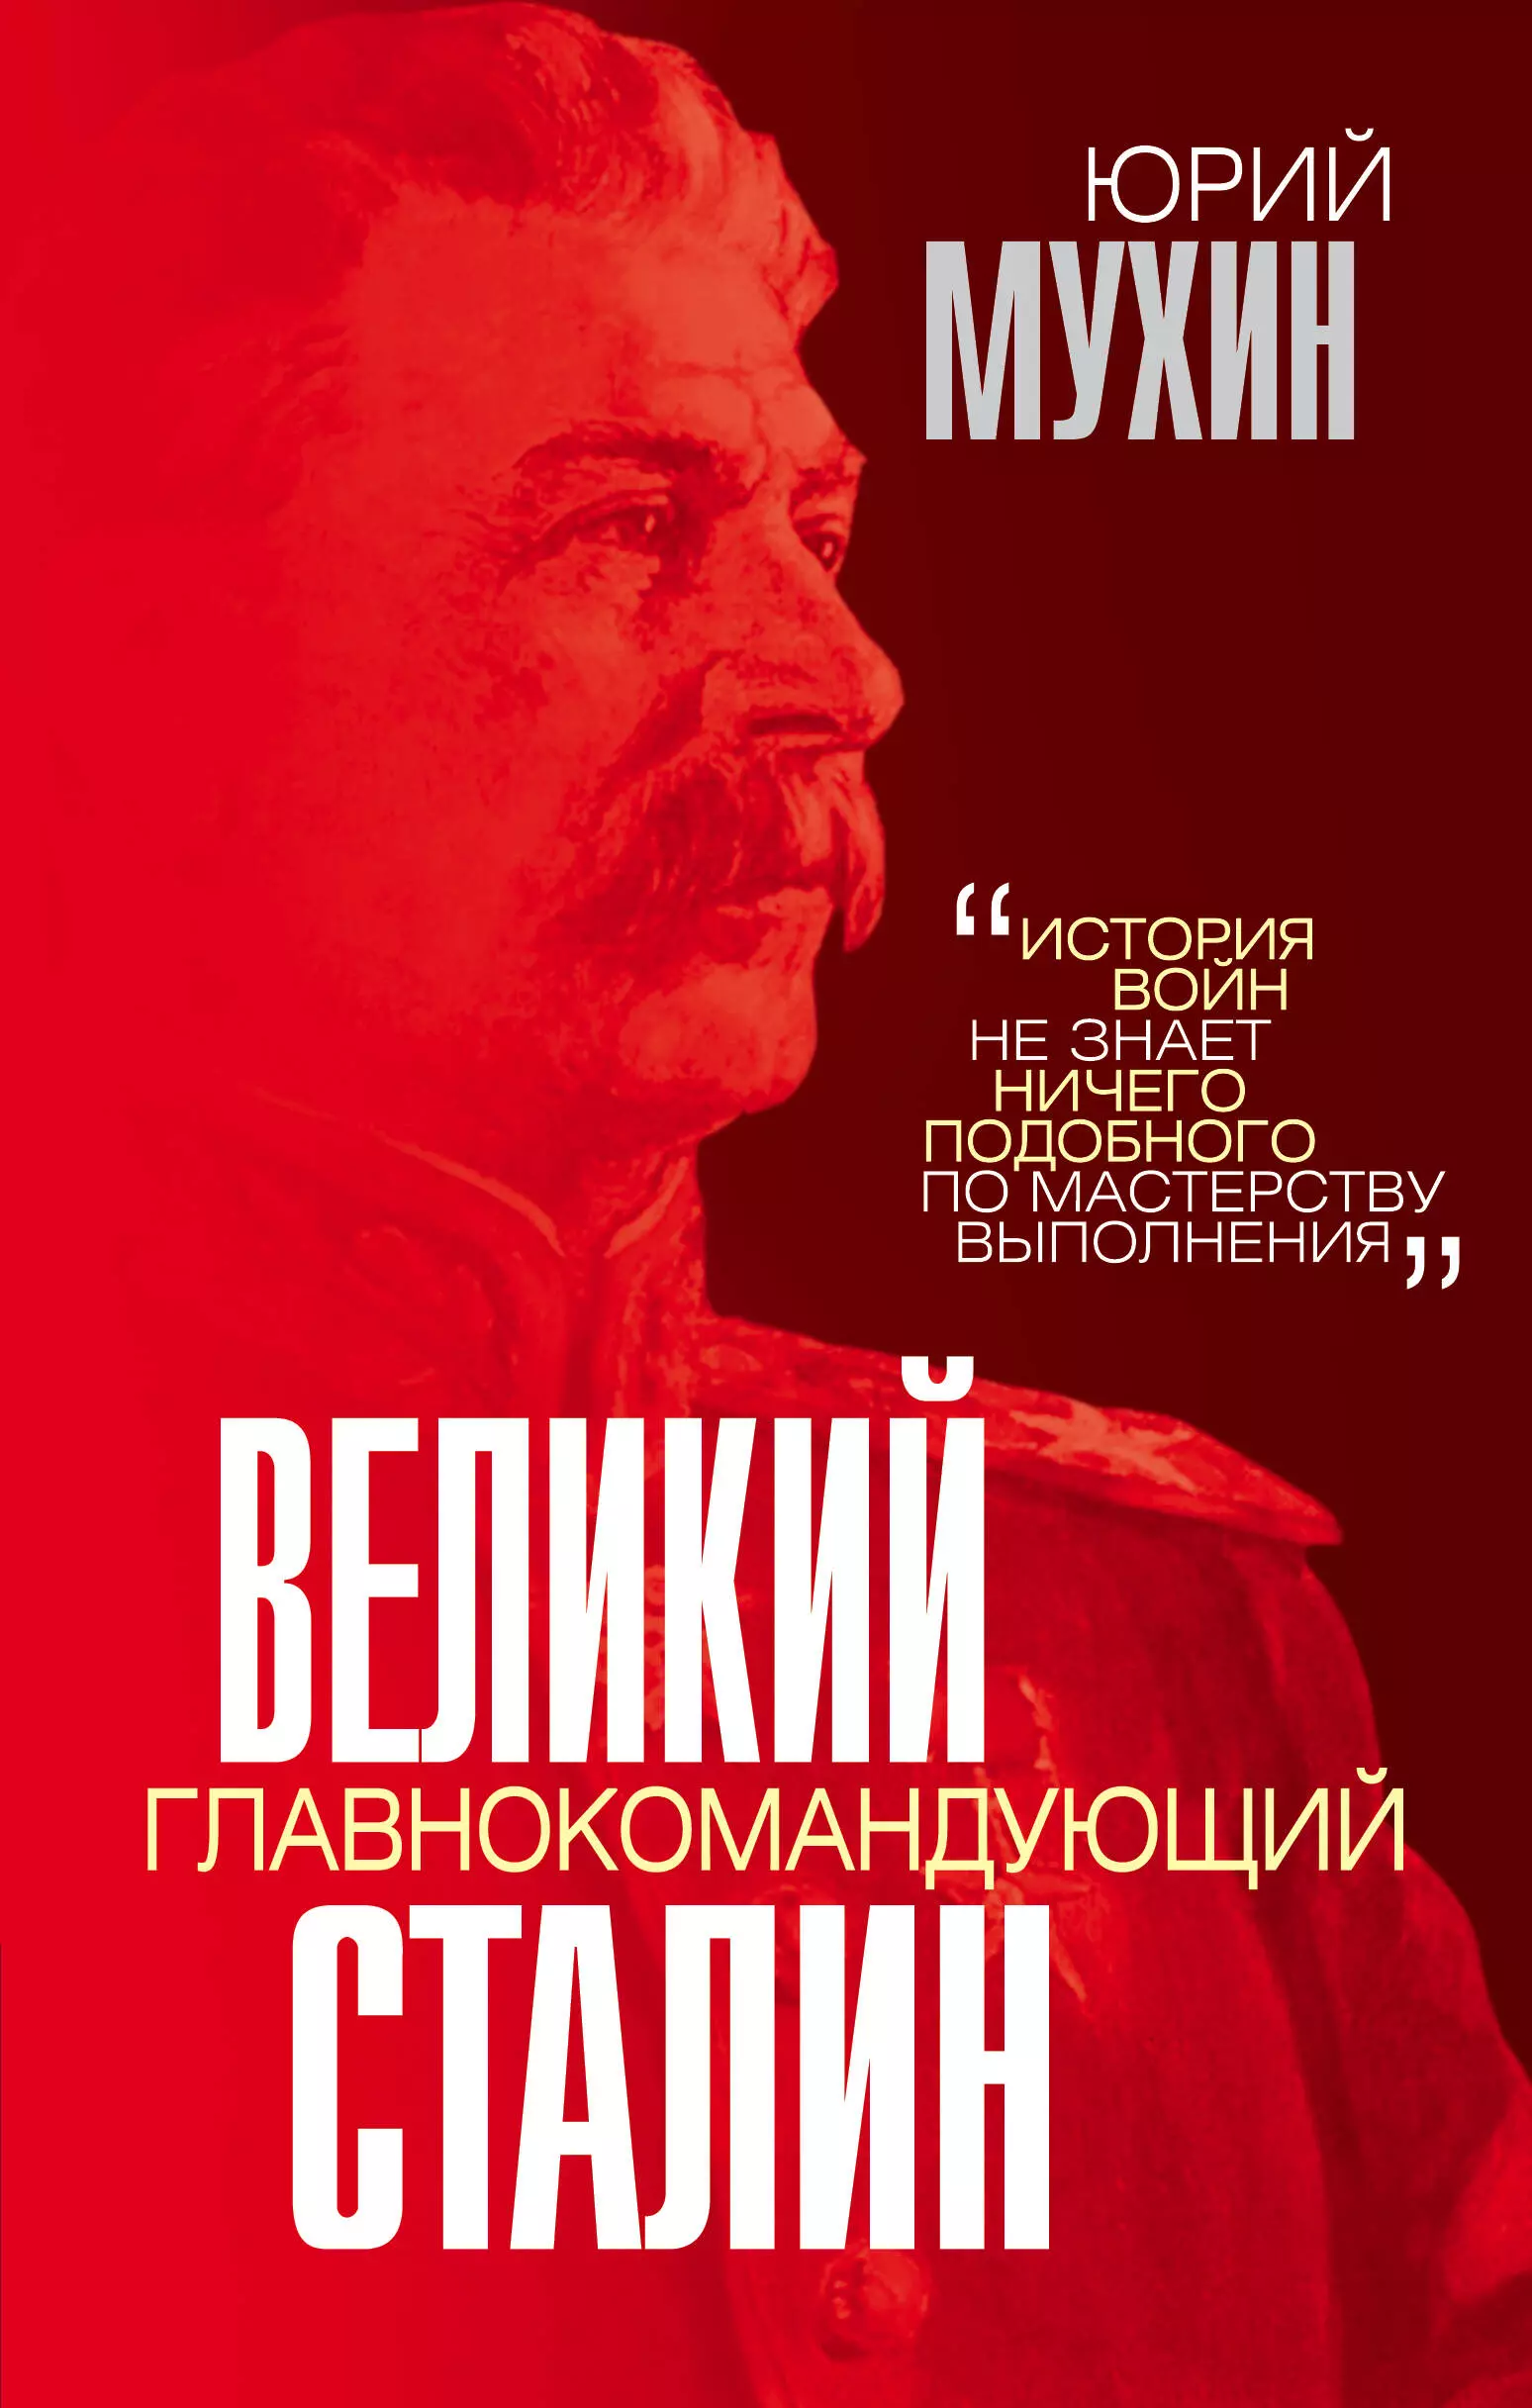 Мухин Юрий Игнатьевич - Великий главнокомандующий И.В. Сталин